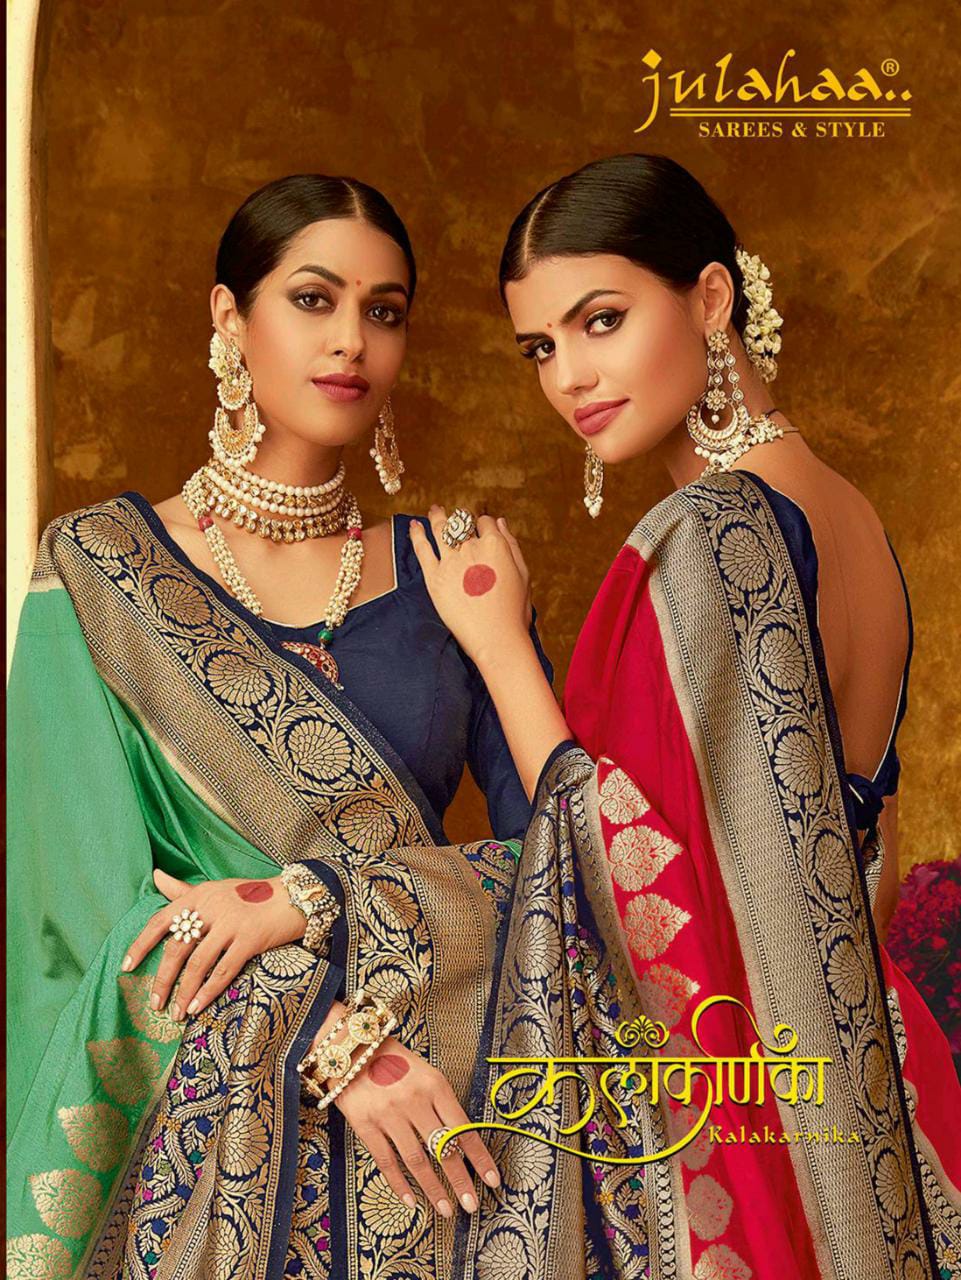 Julahaa Saree Present Kalakarnika Silk Designer Party Wear Stunning Look Saree